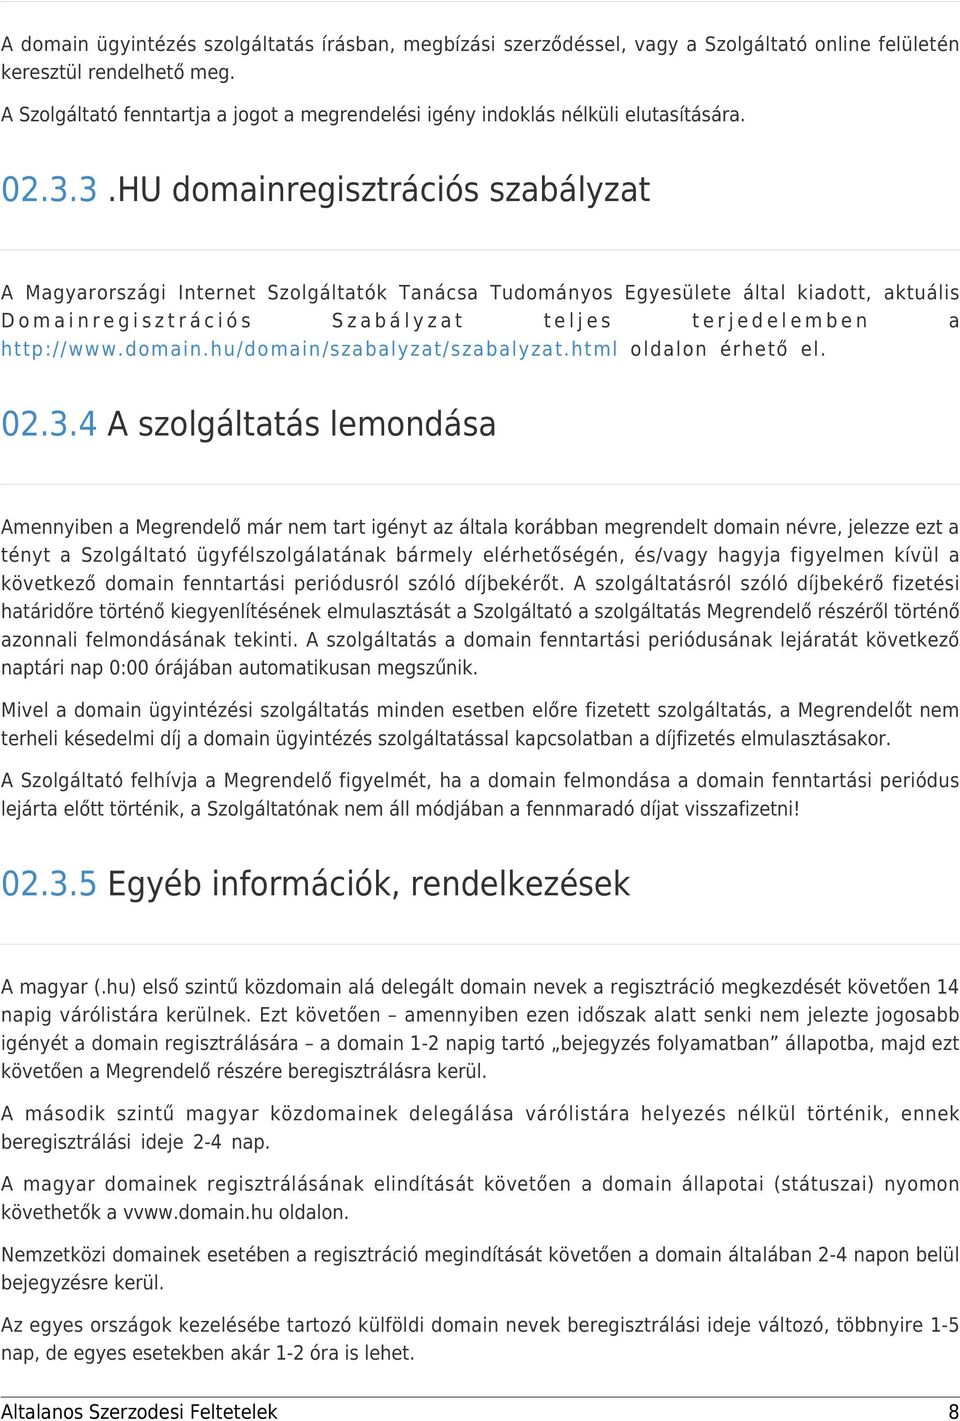 3.HU domainregisztrációs szabályzat A Magyarországi Internet Szolgáltatók Tanácsa Tudományos Egyesülete által kiadott, aktuális Domainregisztrációs Szabályzat teljes terjedelemben a http://www.domain.hu/domain/szabalyzat/szabalyzat.